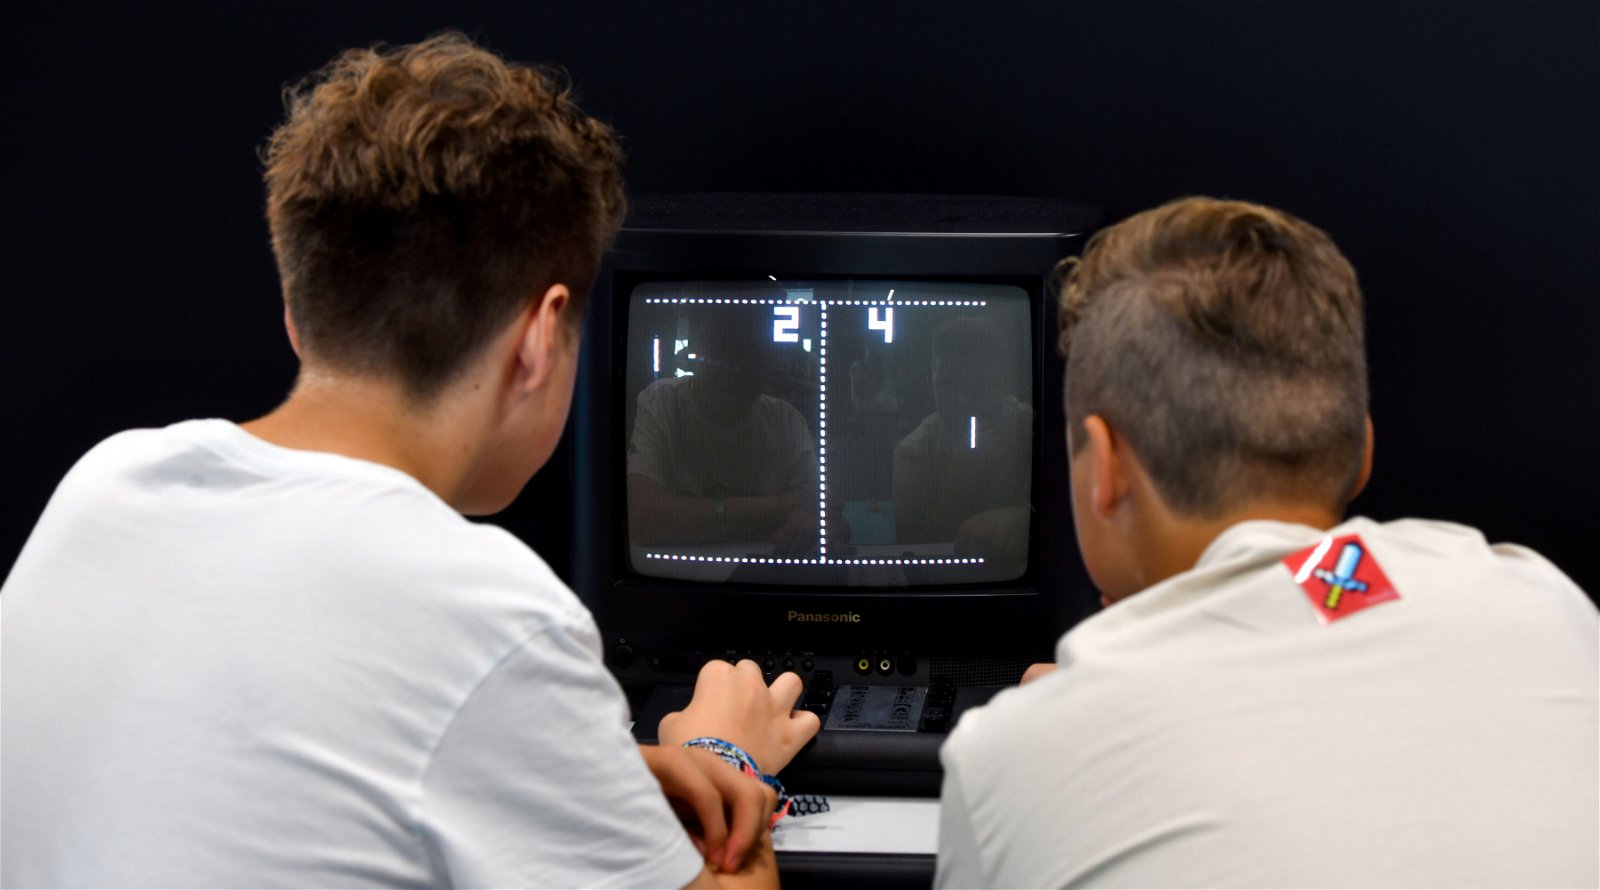 Het spelletje Pong wordt gespeeld door twee jongeren